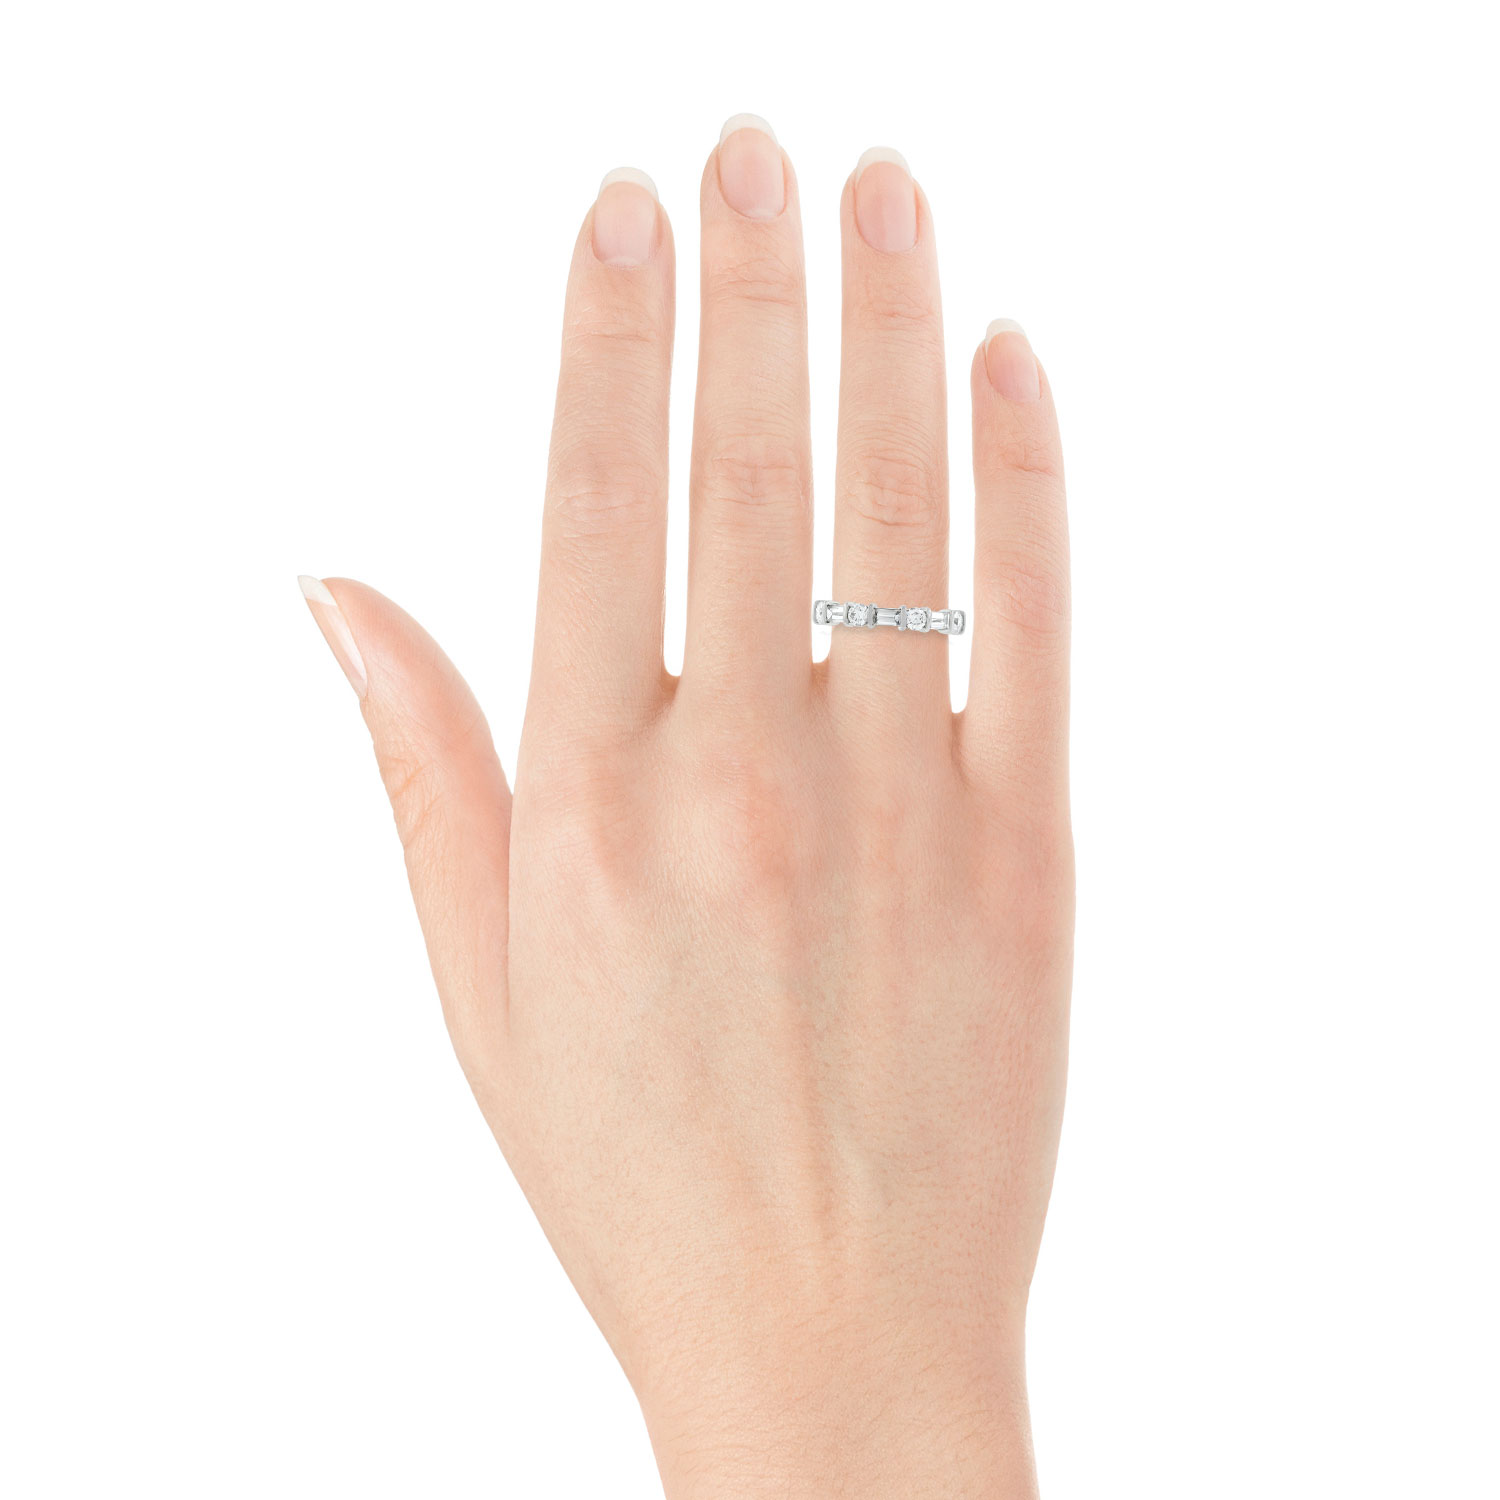 Кольцо на пальце. Обручальное кольцо на пальце. Помолвочное кольцо на пальце. Палец на которое кольцо одевается. На какой палец надевают кольцо девушке